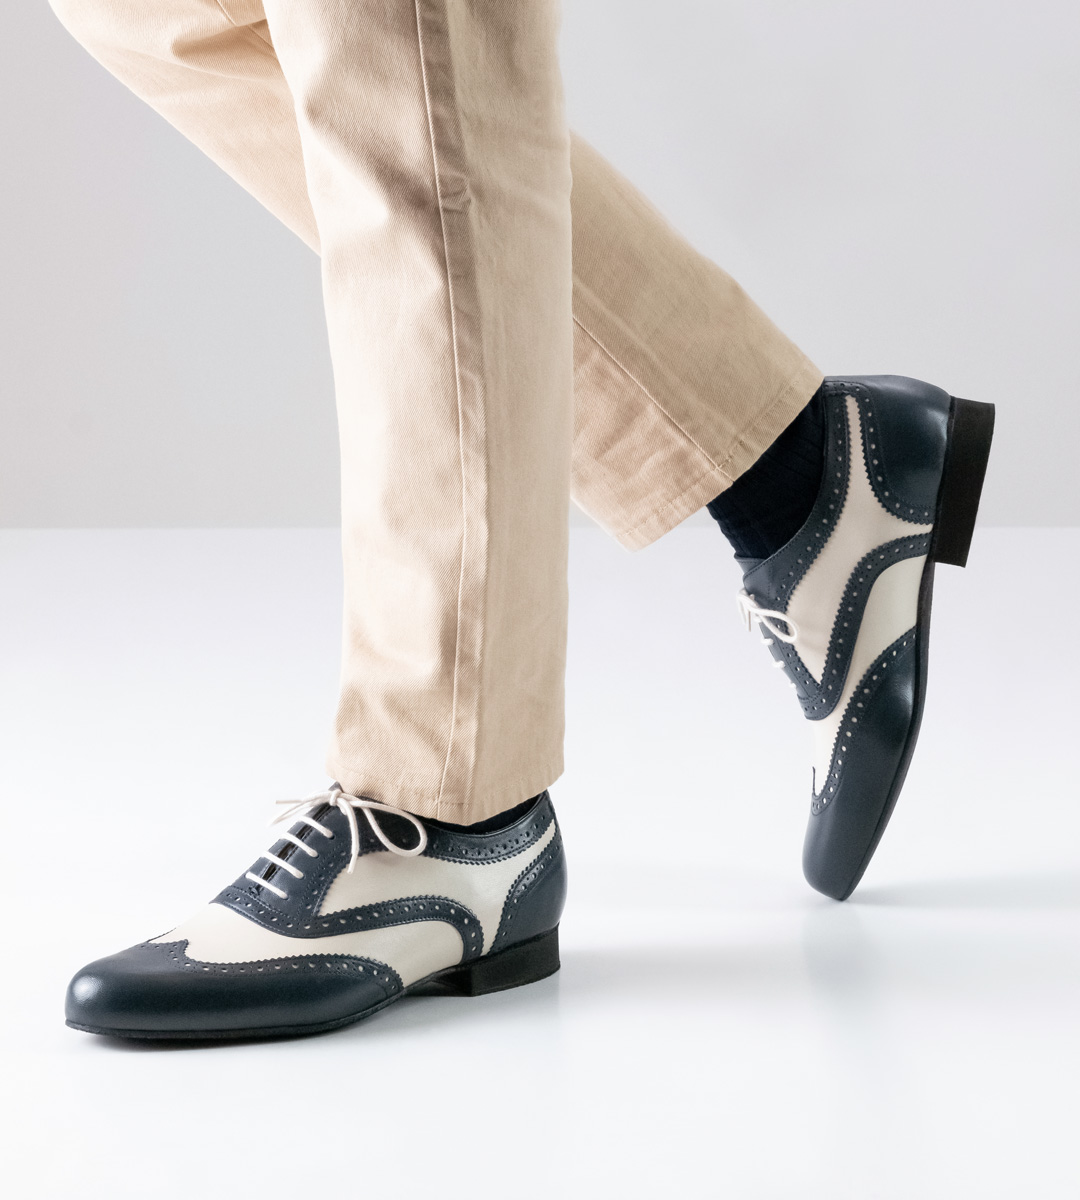 blue-beige men's dance shoe from Nueva Epoca with 2 cm high heel